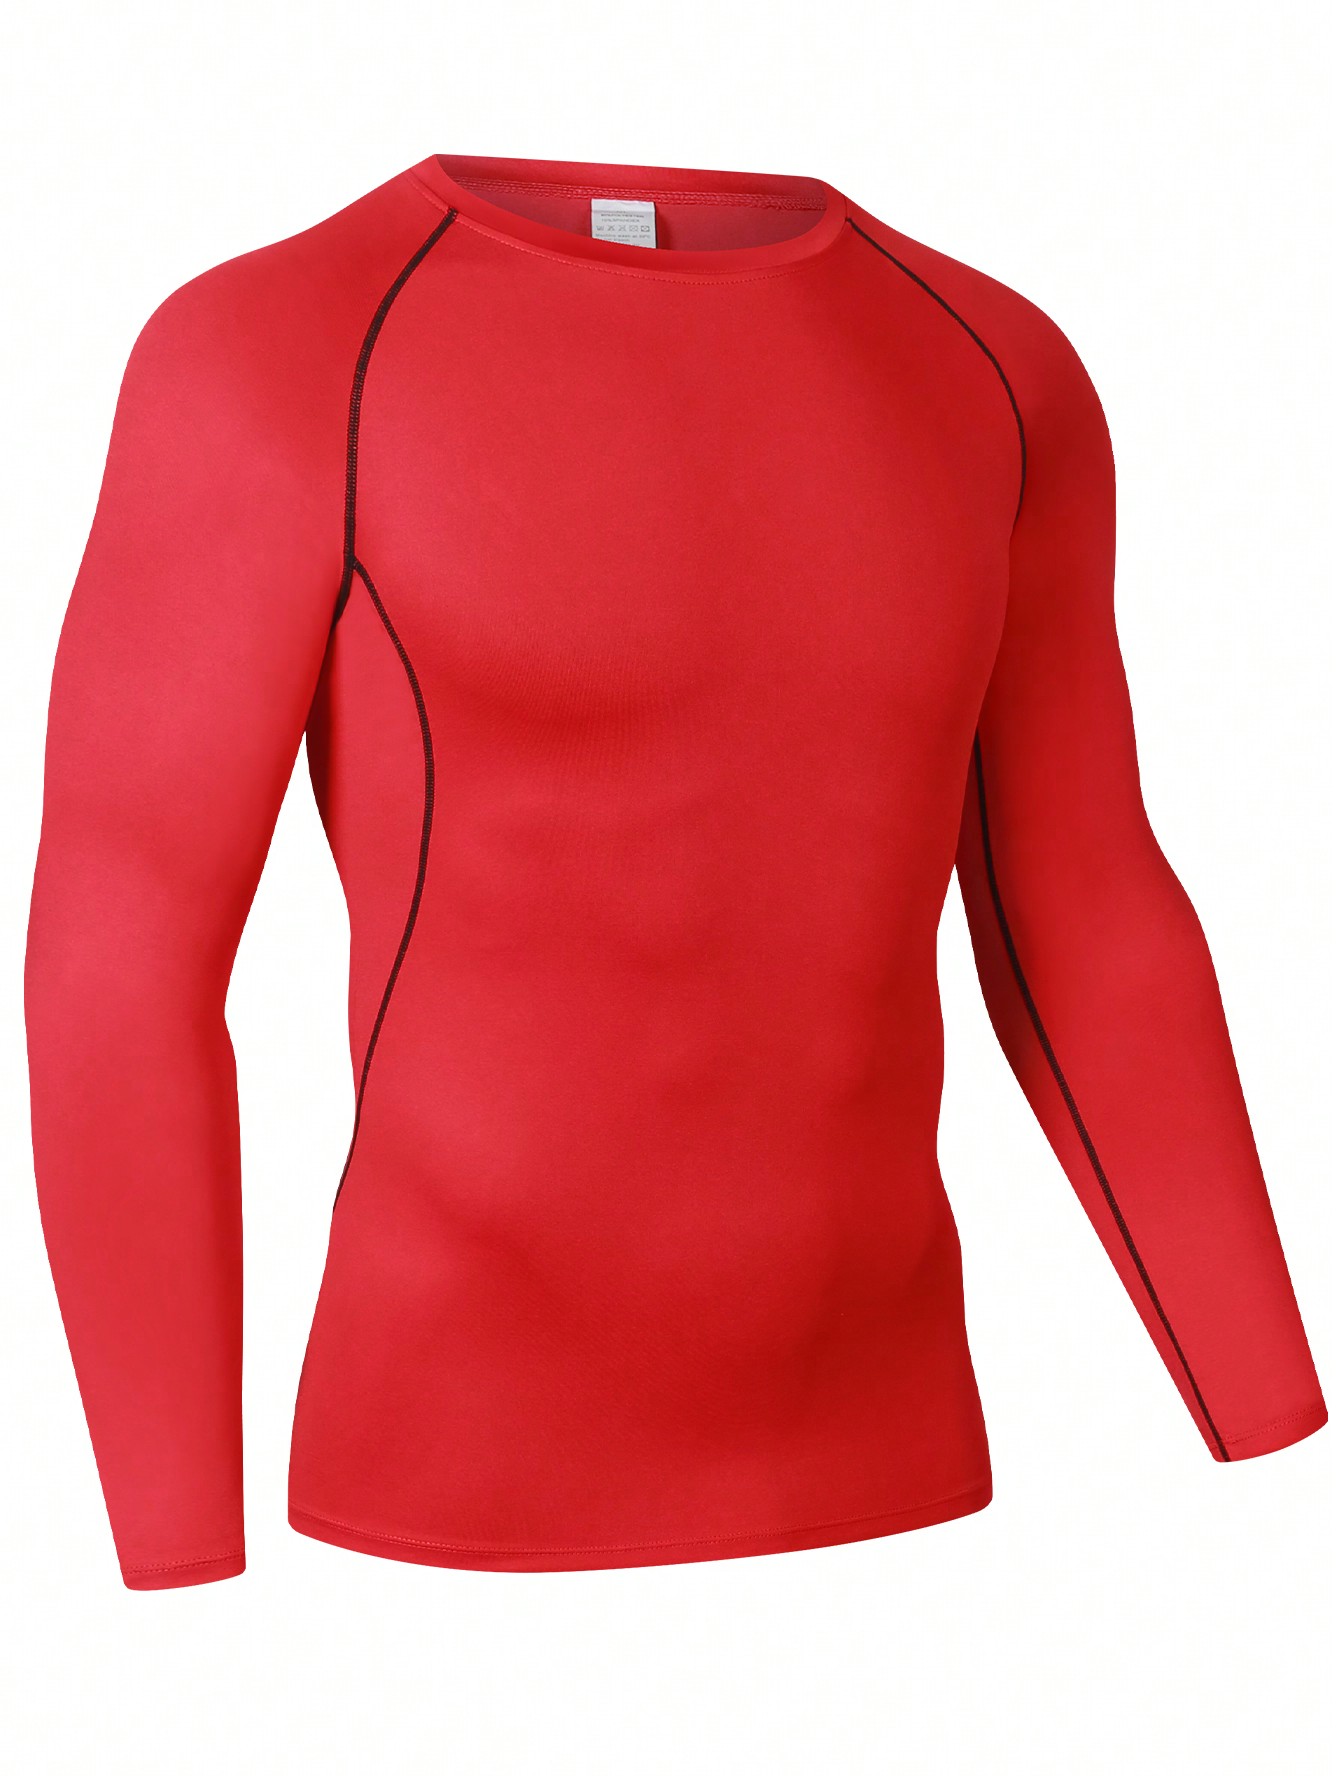 Мужская эластичная компрессионная рубашка для фитнеса с длинными рукавами, красный